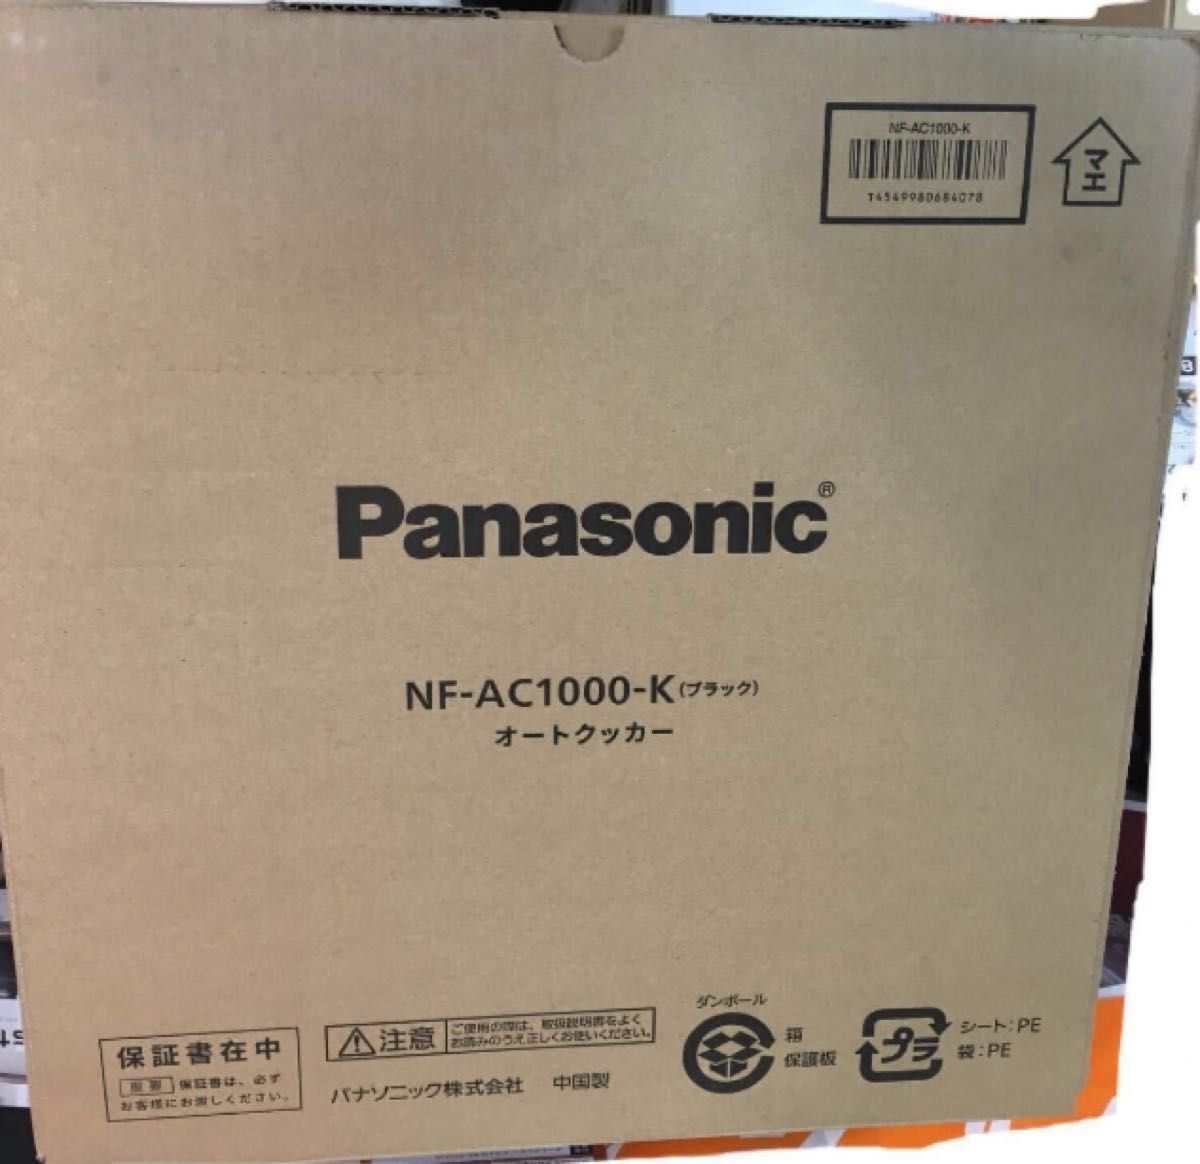 Panasonic オートクッカー ビストロ NF-AC1000-K [ブラック] 